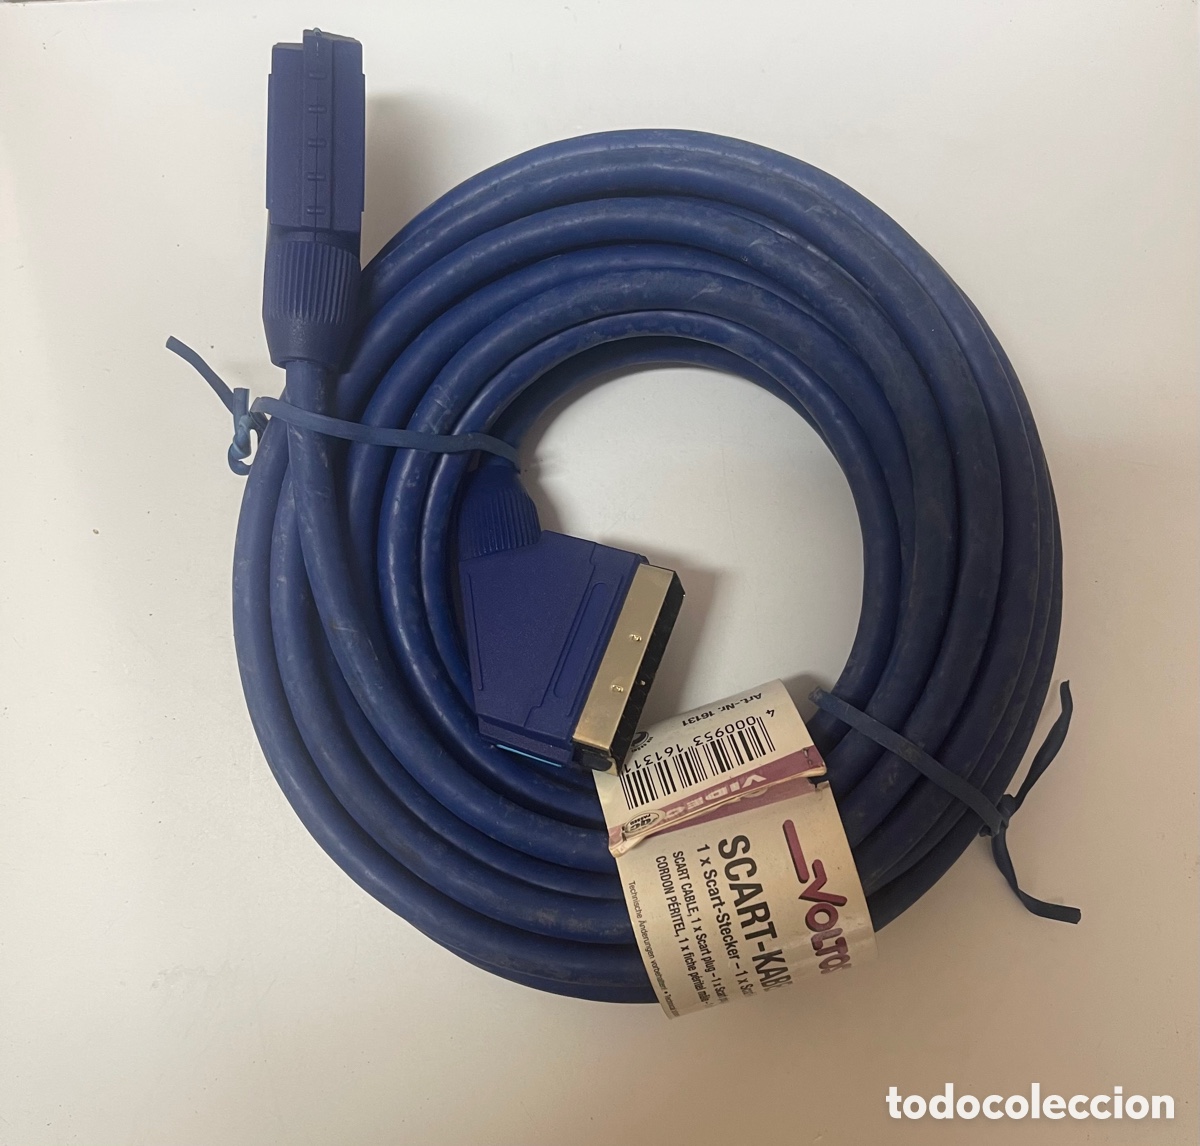 cable euroconector 21 pins azul - Compra venta en todocoleccion